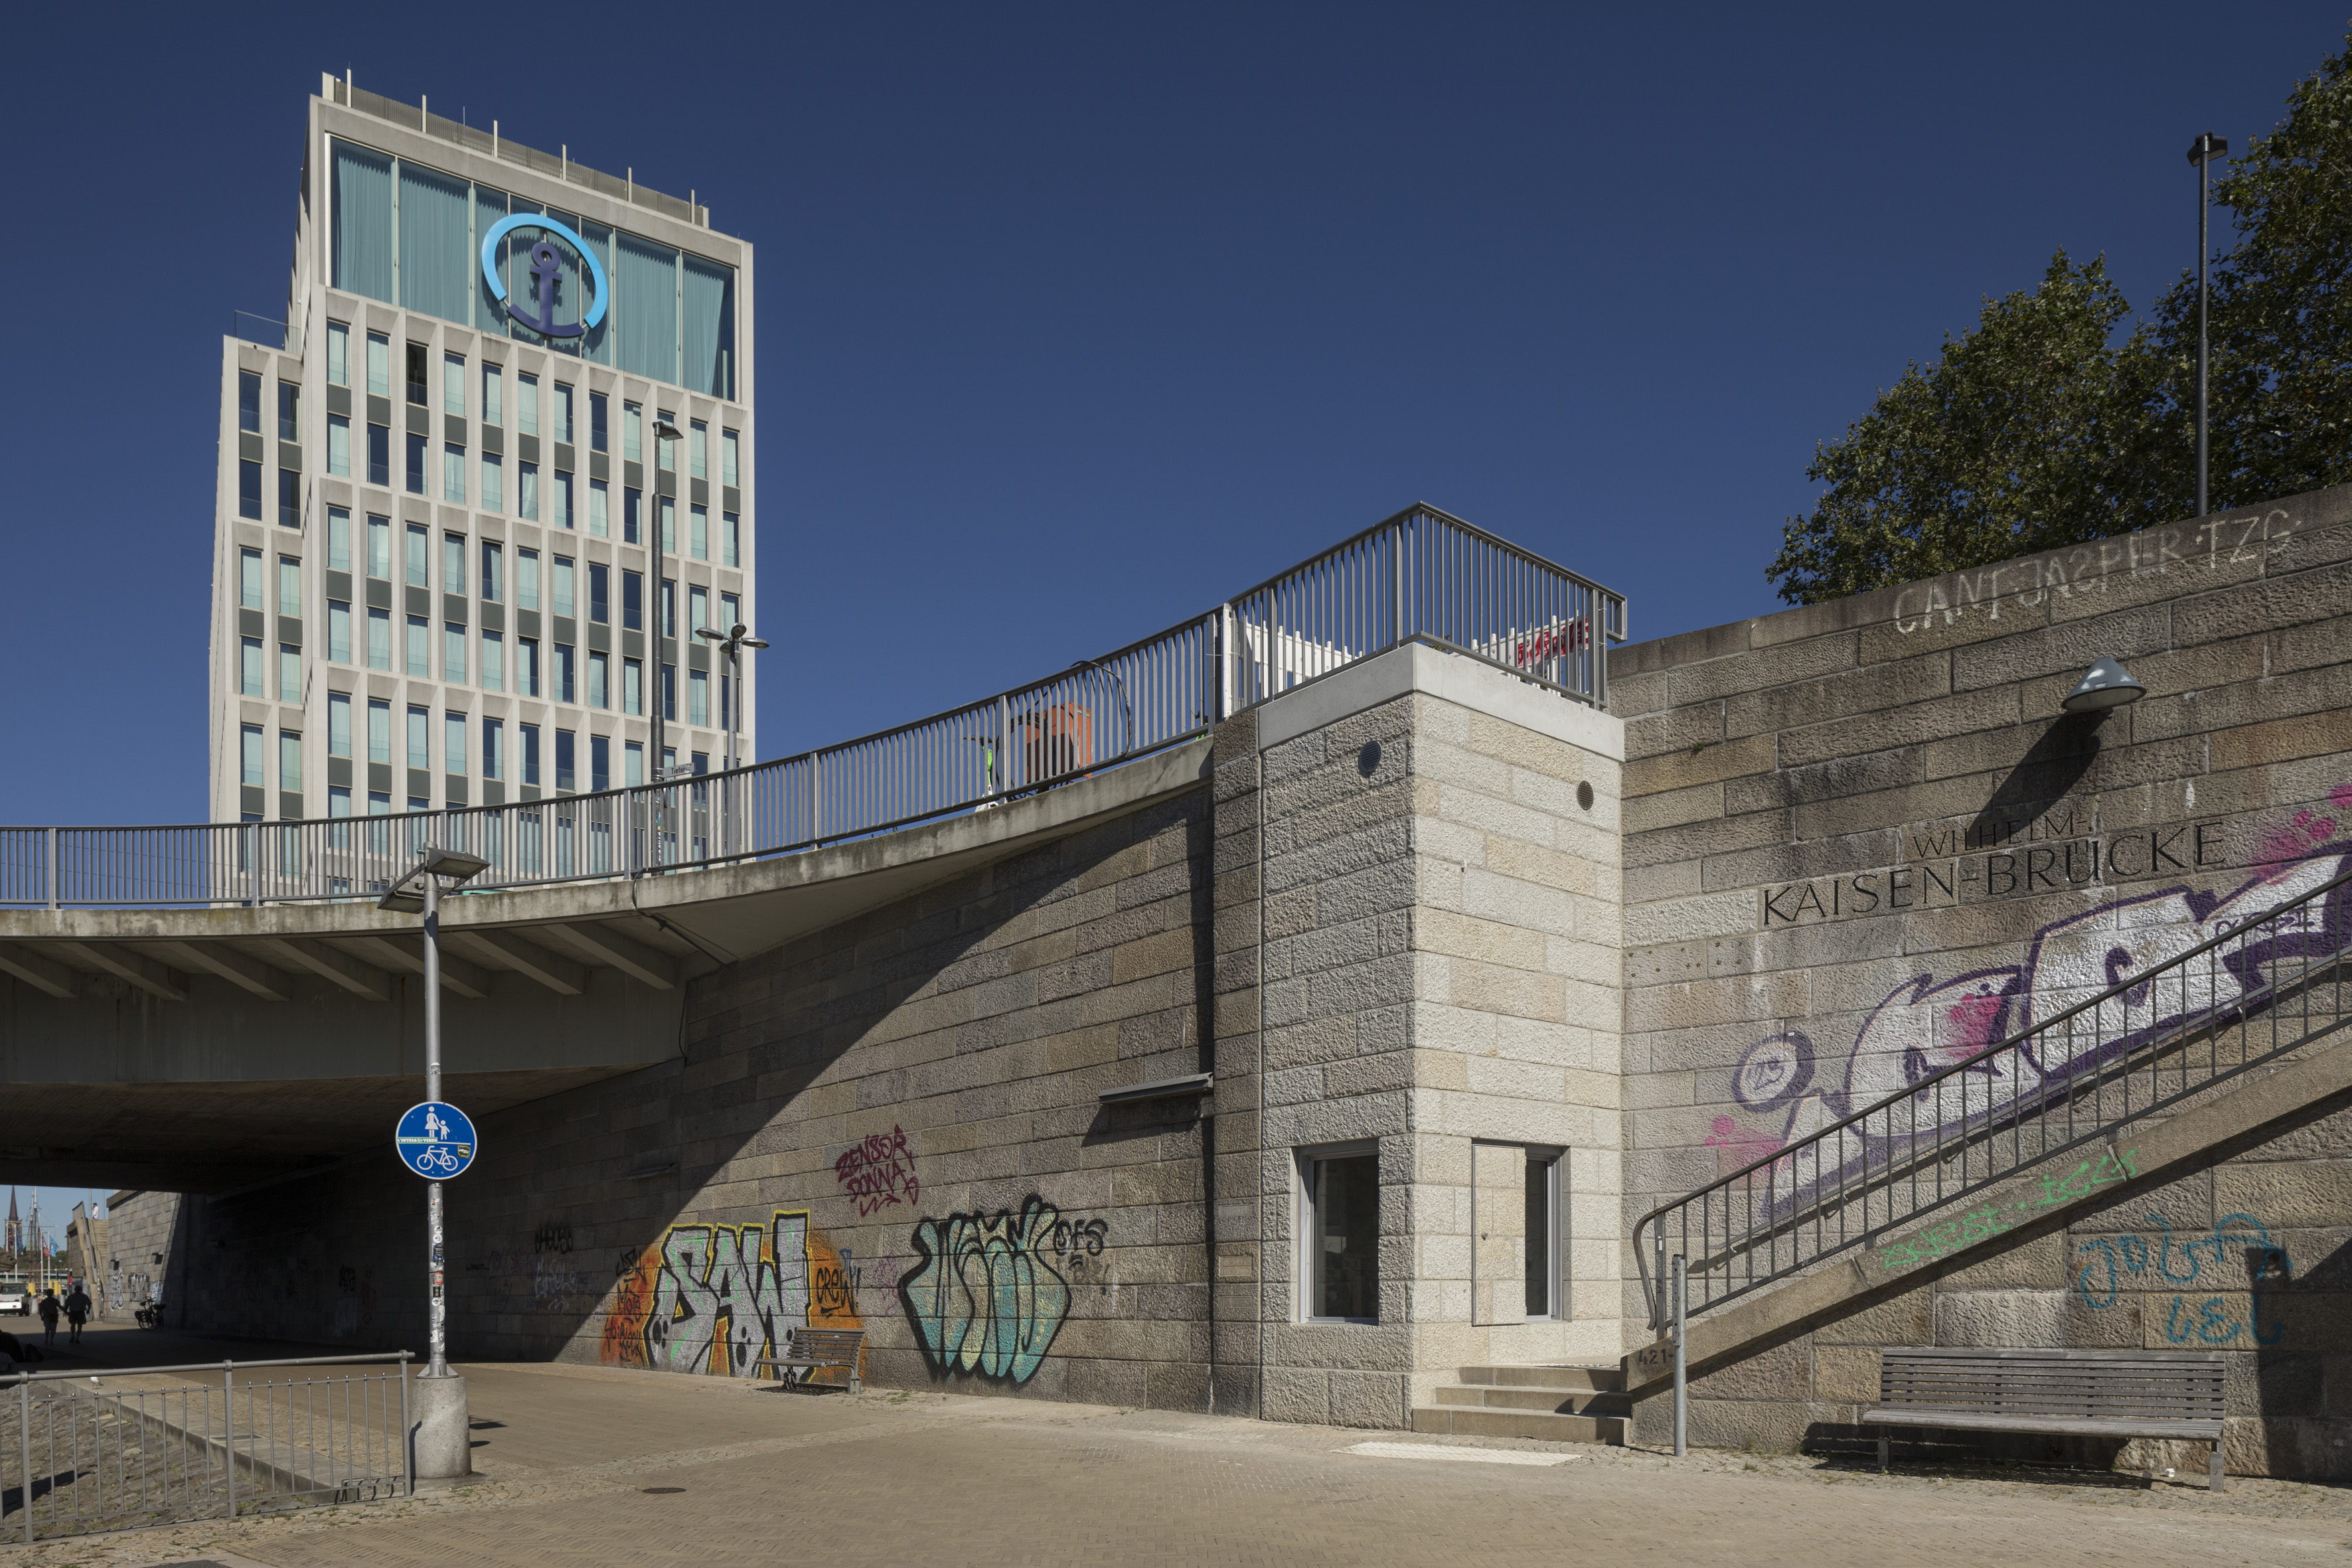 <p>Blauer Himmel. Auf der Wilhelm-Kaisen-Brücke der Neubau des Bürogebäudes von Kühne und Nagel. Unterhalb das fast fertig gestellte Mahnmal. Unlesbare Graffitis an der Wand.</p>